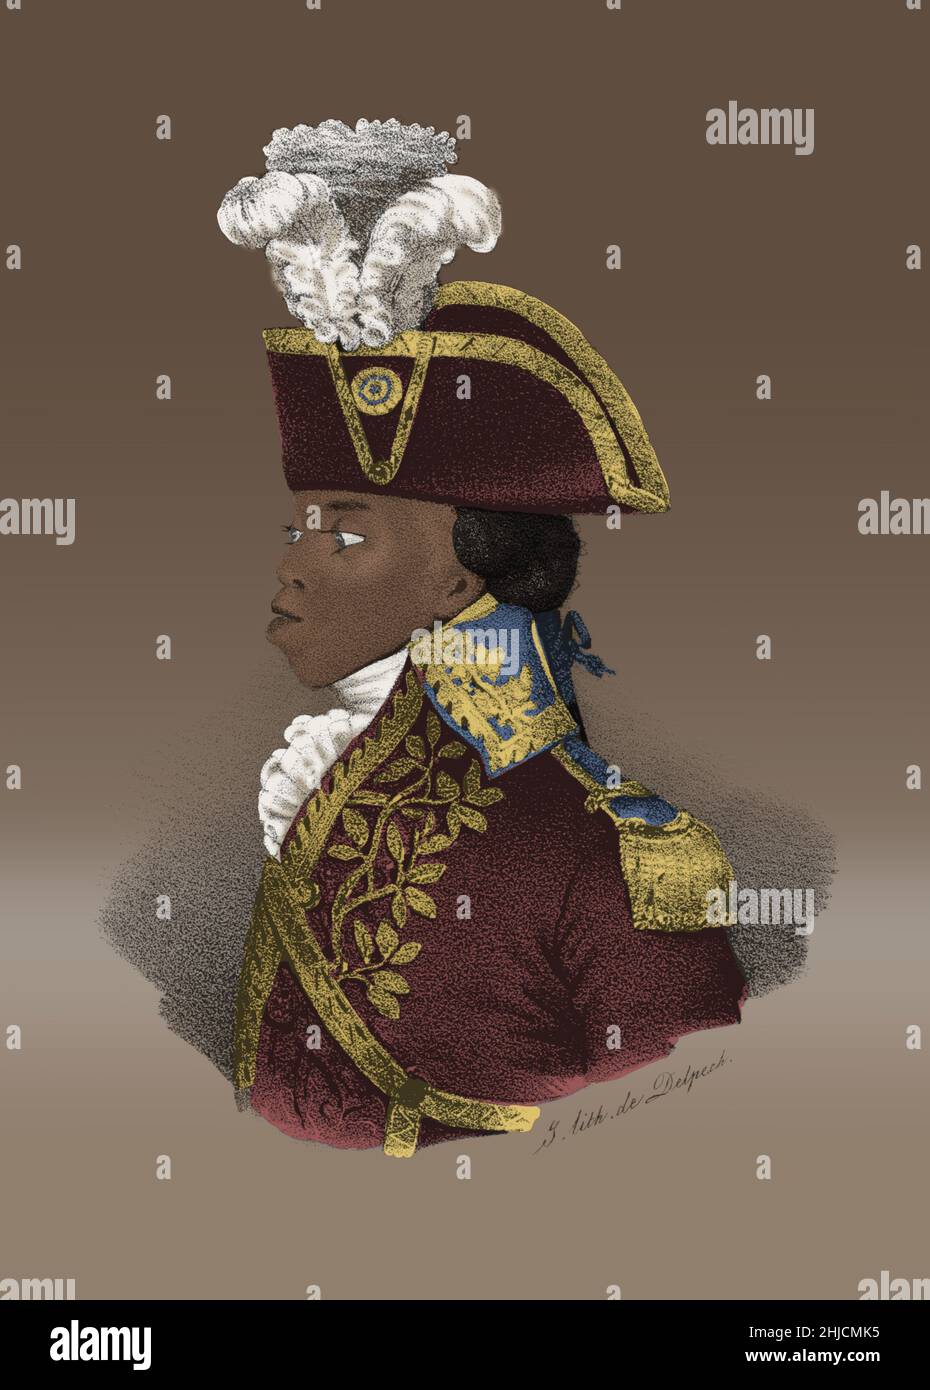 Toussaint l'Ouverture (20 maggio 1743 – 7 aprile 1803) è stato un generale haitiano che ha trasformato una rivolta schiava in un movimento, la rivoluzione haitiana. Entro il 1800 Saint-Domingue, la colonia francese di schiavi più prospera del tempo, era diventato la prima società coloniale libera ad aver rifiutato la razza come base di classifica sociale. L'Ouverture creò una colonia autonoma de facto e la costituzione lo proclamò governatore per la vita. Nel 1802 fu costretto a dimettersi dalle forze inviate da Napoleone per ripristinare l'autorità francese nell'ex colonia. Fu deportato in Francia, dove morì nel 1803. Nessun cr artista Foto Stock